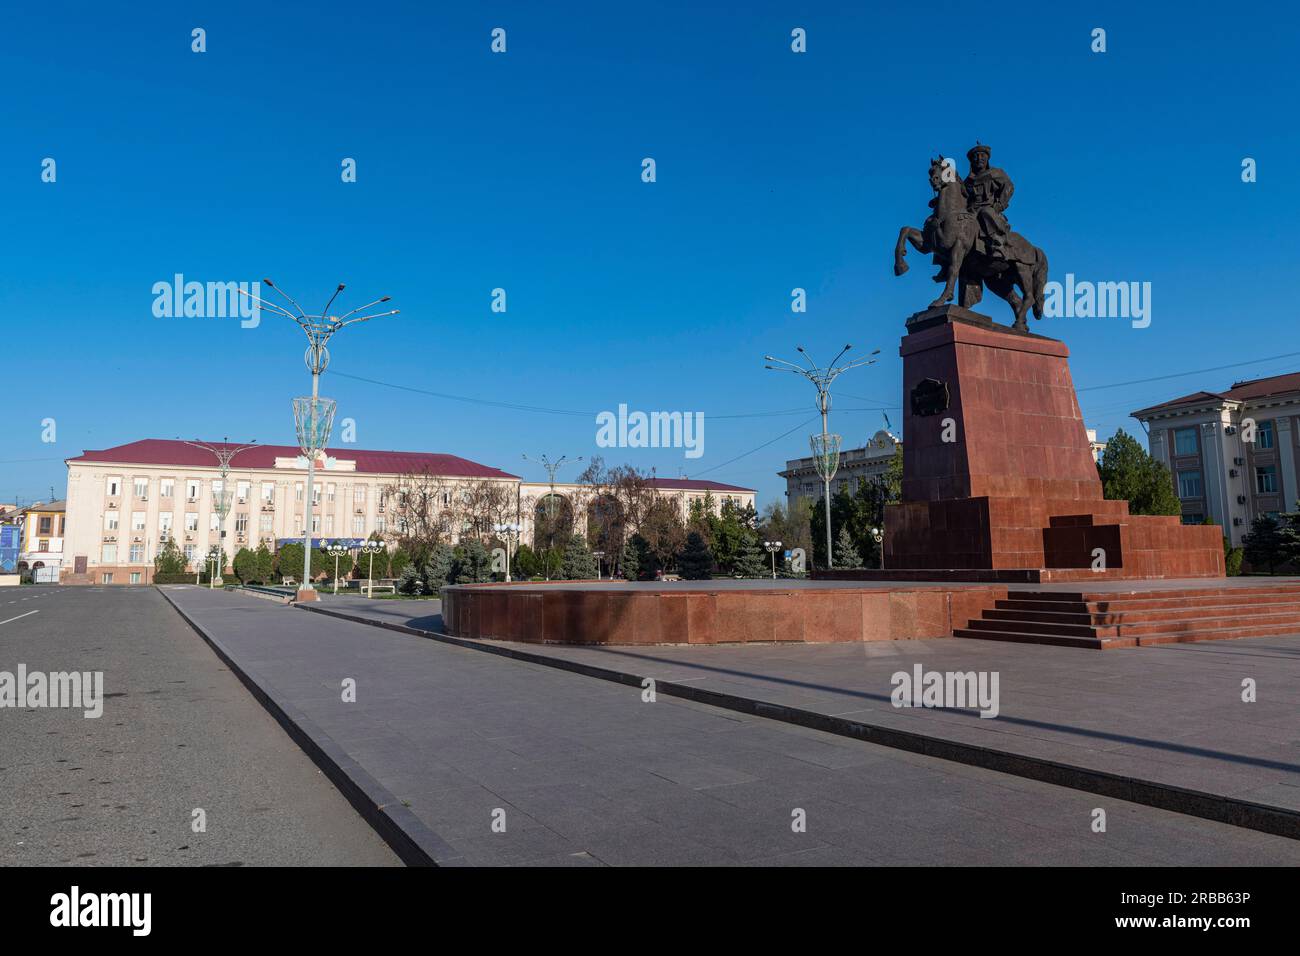 Taraz Akimat City Hall with Statue of Baydibek Batyr Riding a Horse, Taraz, Kazakhstan Stock Photo